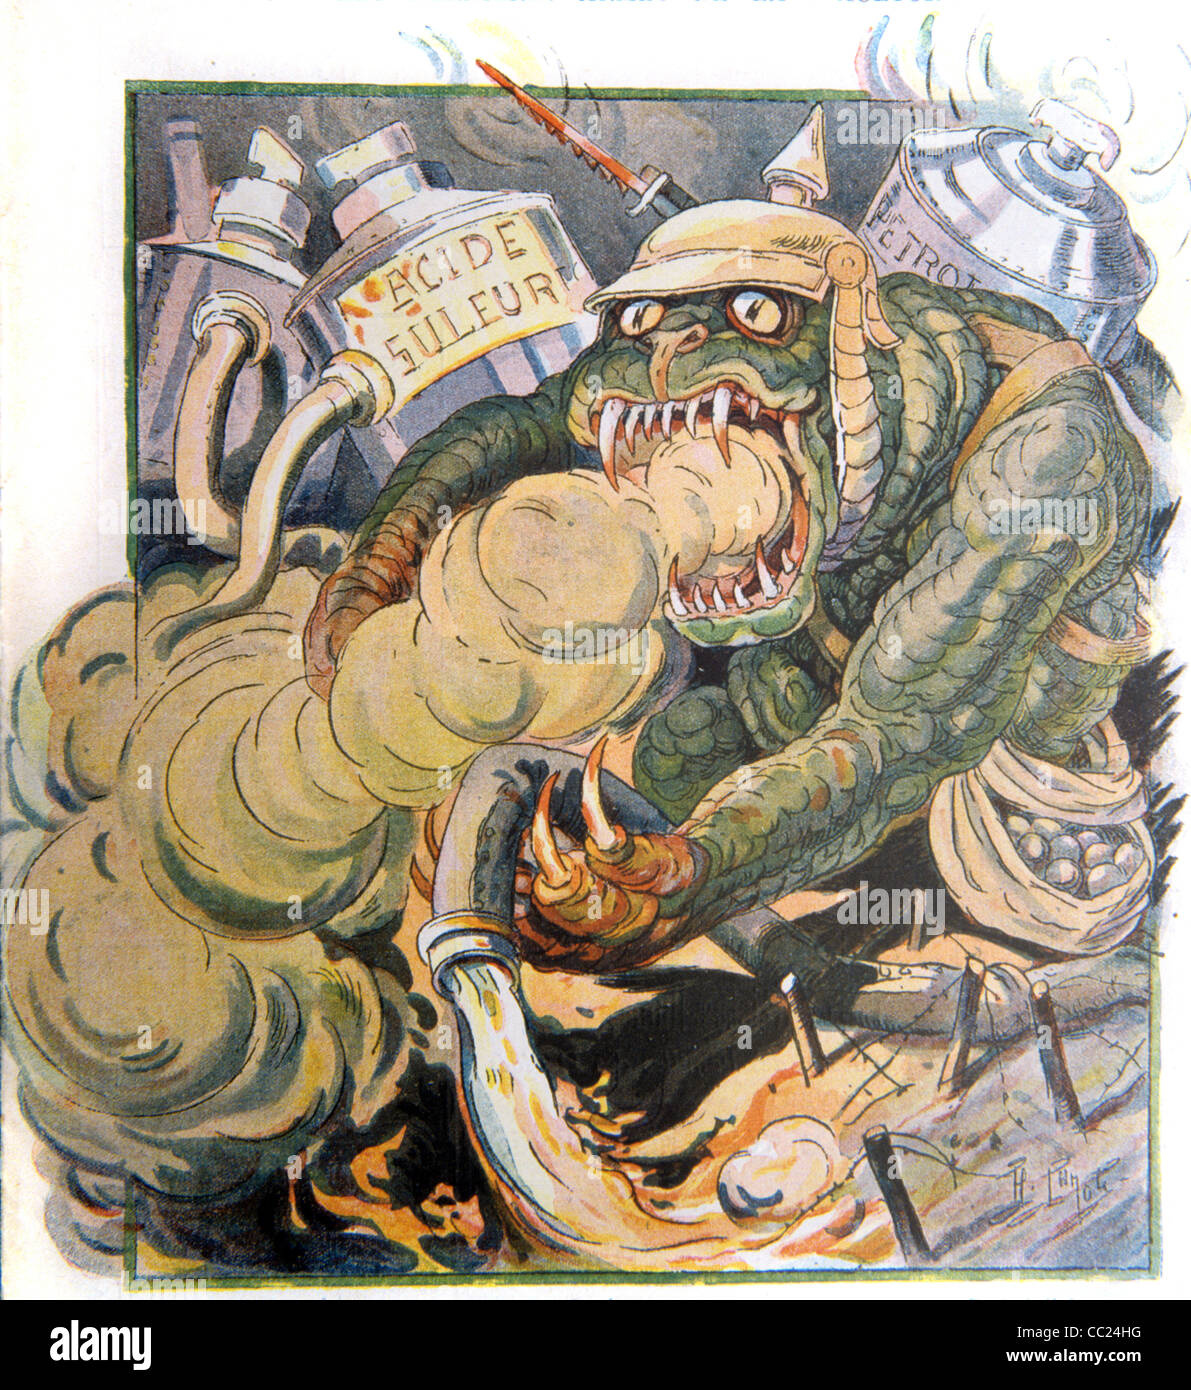 Armes chimiques, guerre biologique ou armes. Allemagne la bête puctade. Propagande de la première Guerre mondiale. Magazine satirique français, le Rire, 1915 Banque D'Images